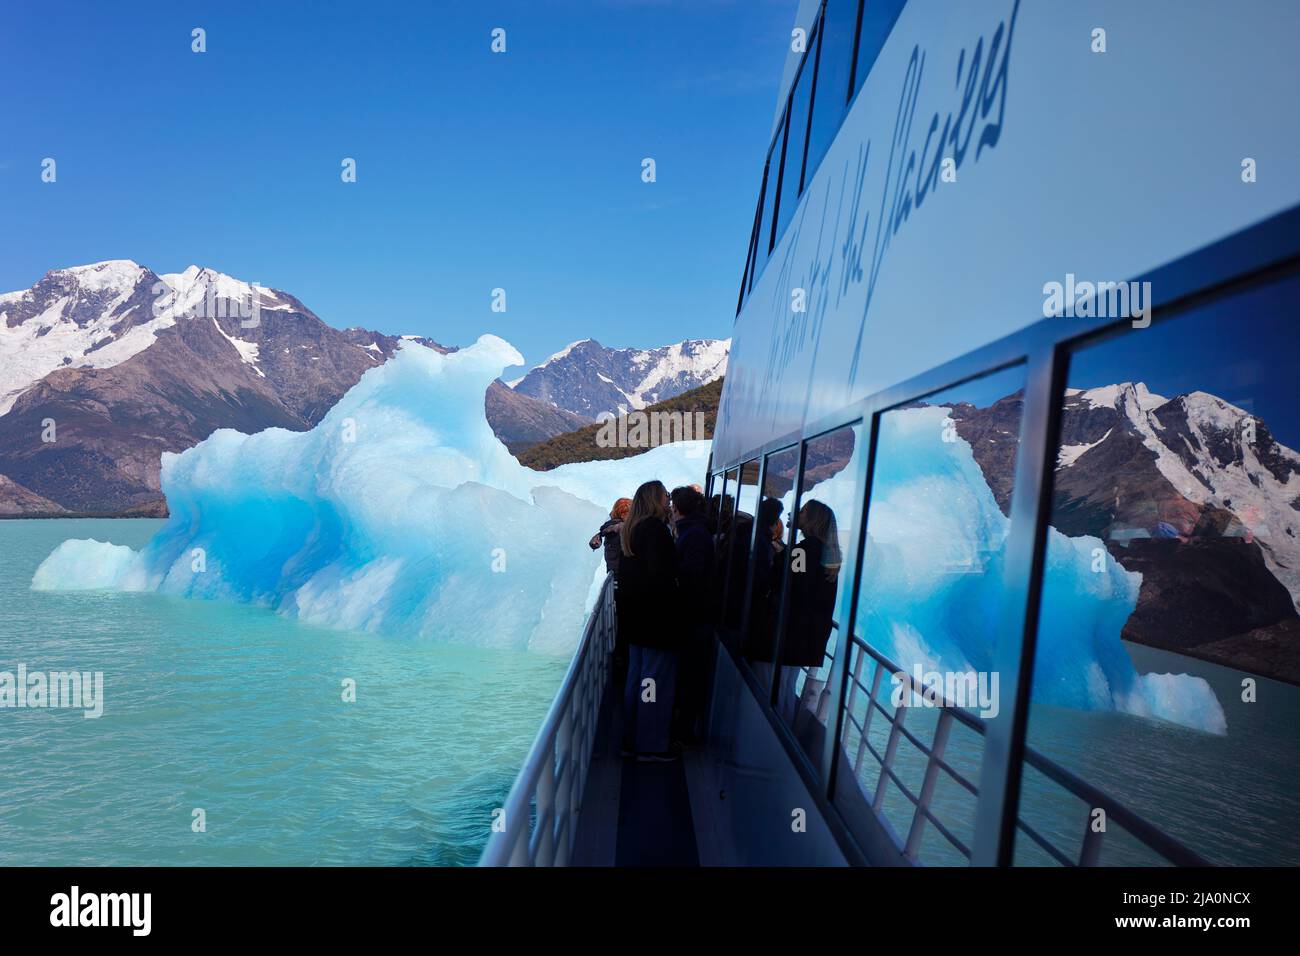 Ein blauer Eisberg, der sich während der Fahrt im Argentino Lake, Los Glaciares National Park, Argentinien, im Schiffsspiegel spiegelt. Stockfoto